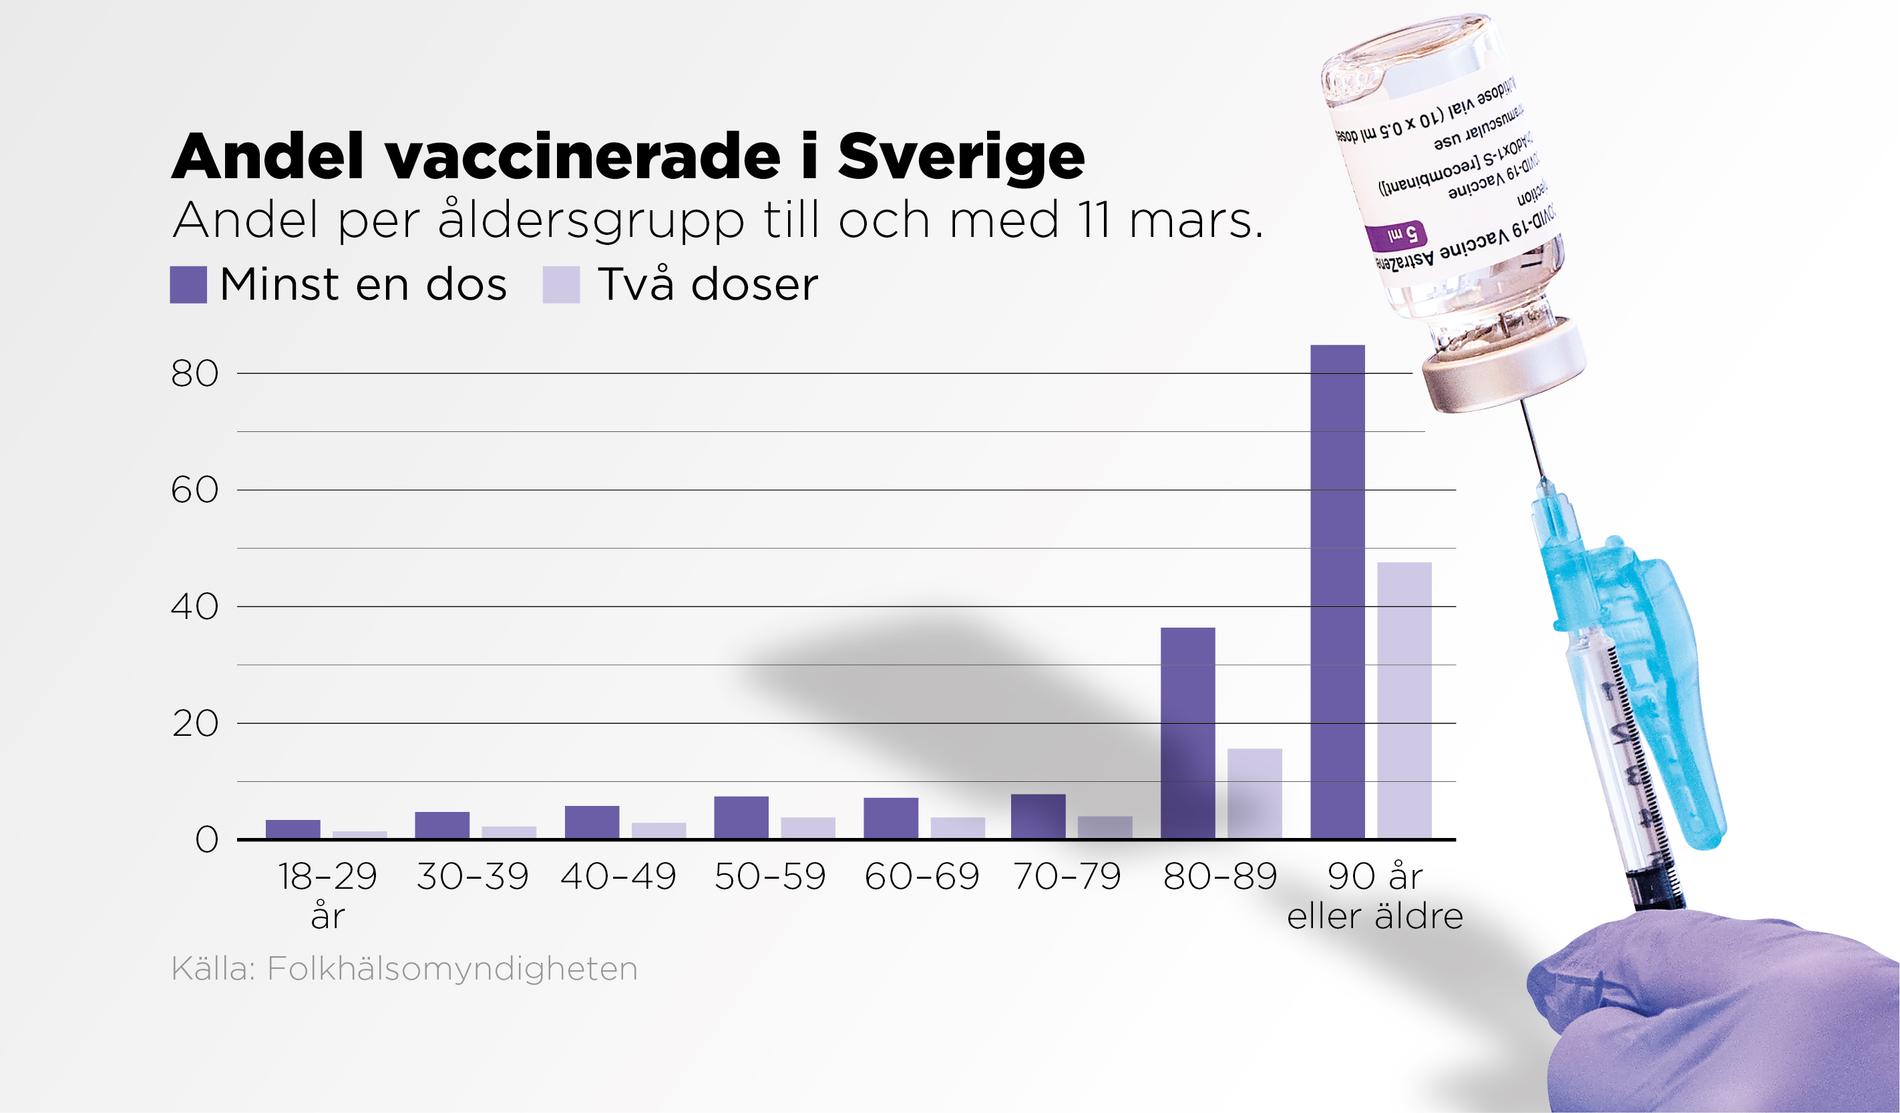 Den stora majoriteten av dem som hittills fått vaccin är de allra äldsta, vilket inte påverkat risken att bli smittad och sjuk för de yngre.